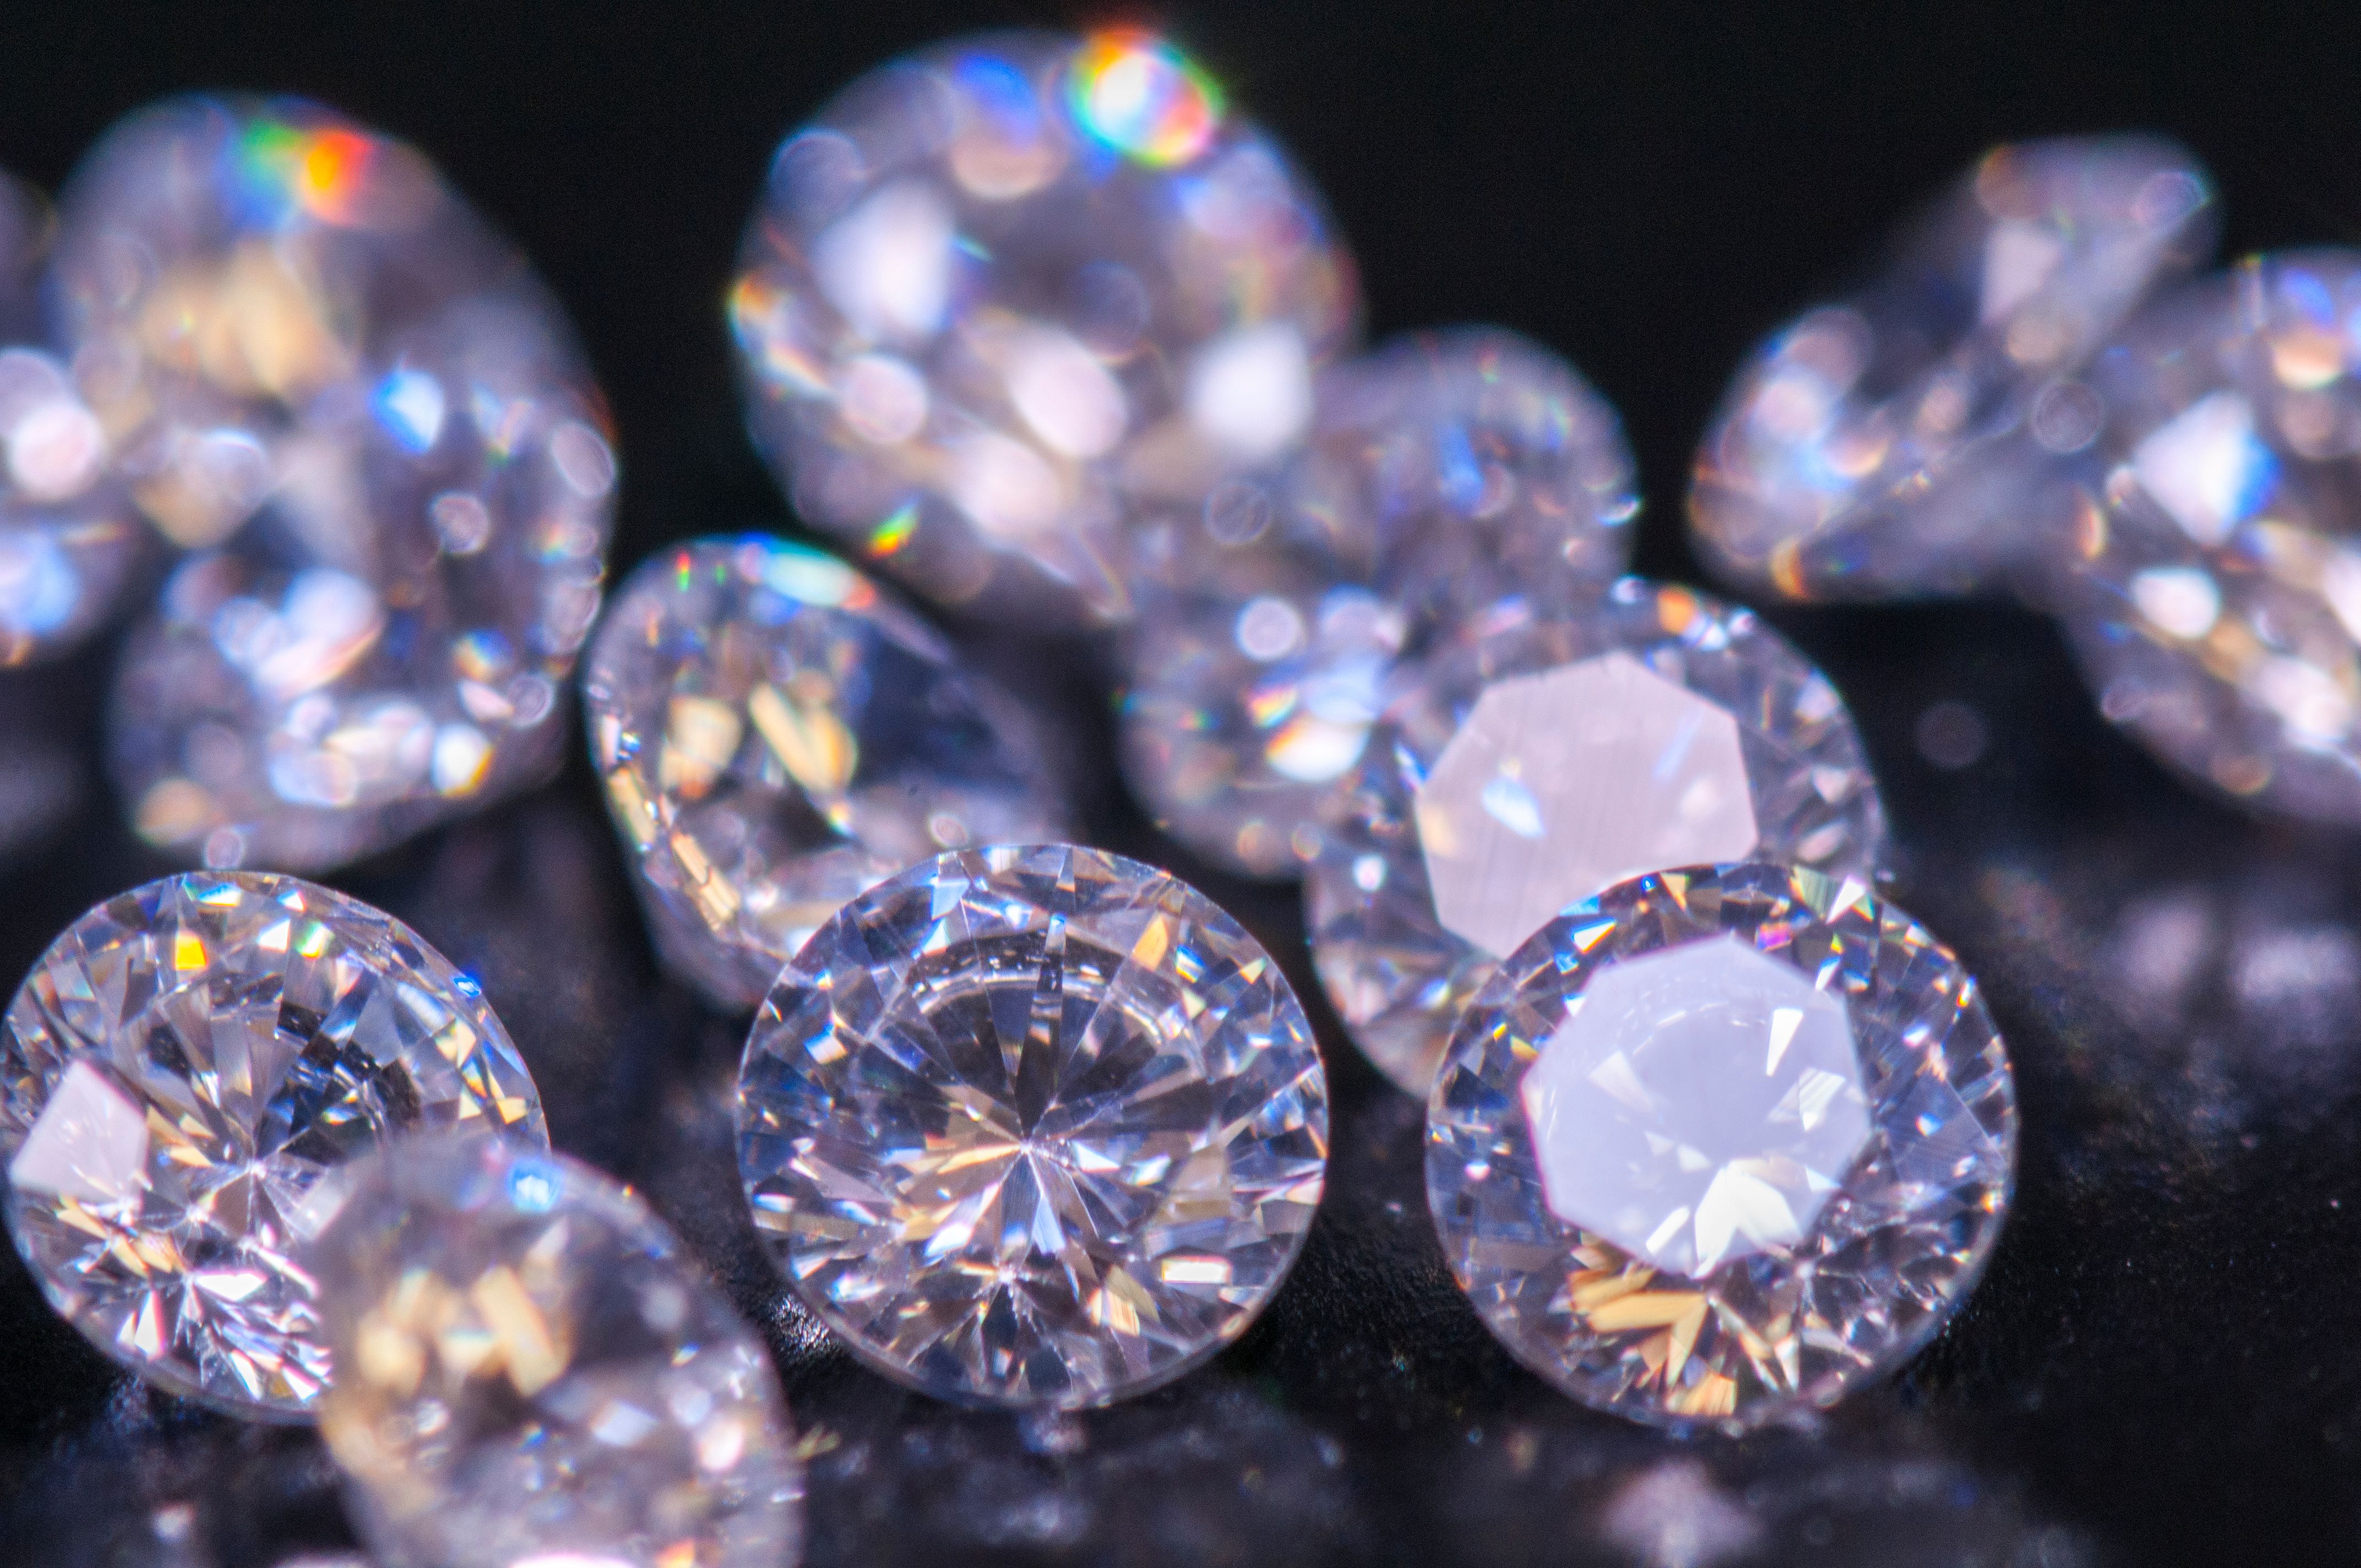 U hoq si eksperte e gurëve të çmuar, 60-vjeçarja vjedh në argjendari diamante me vlerë 4.2 milionë paund